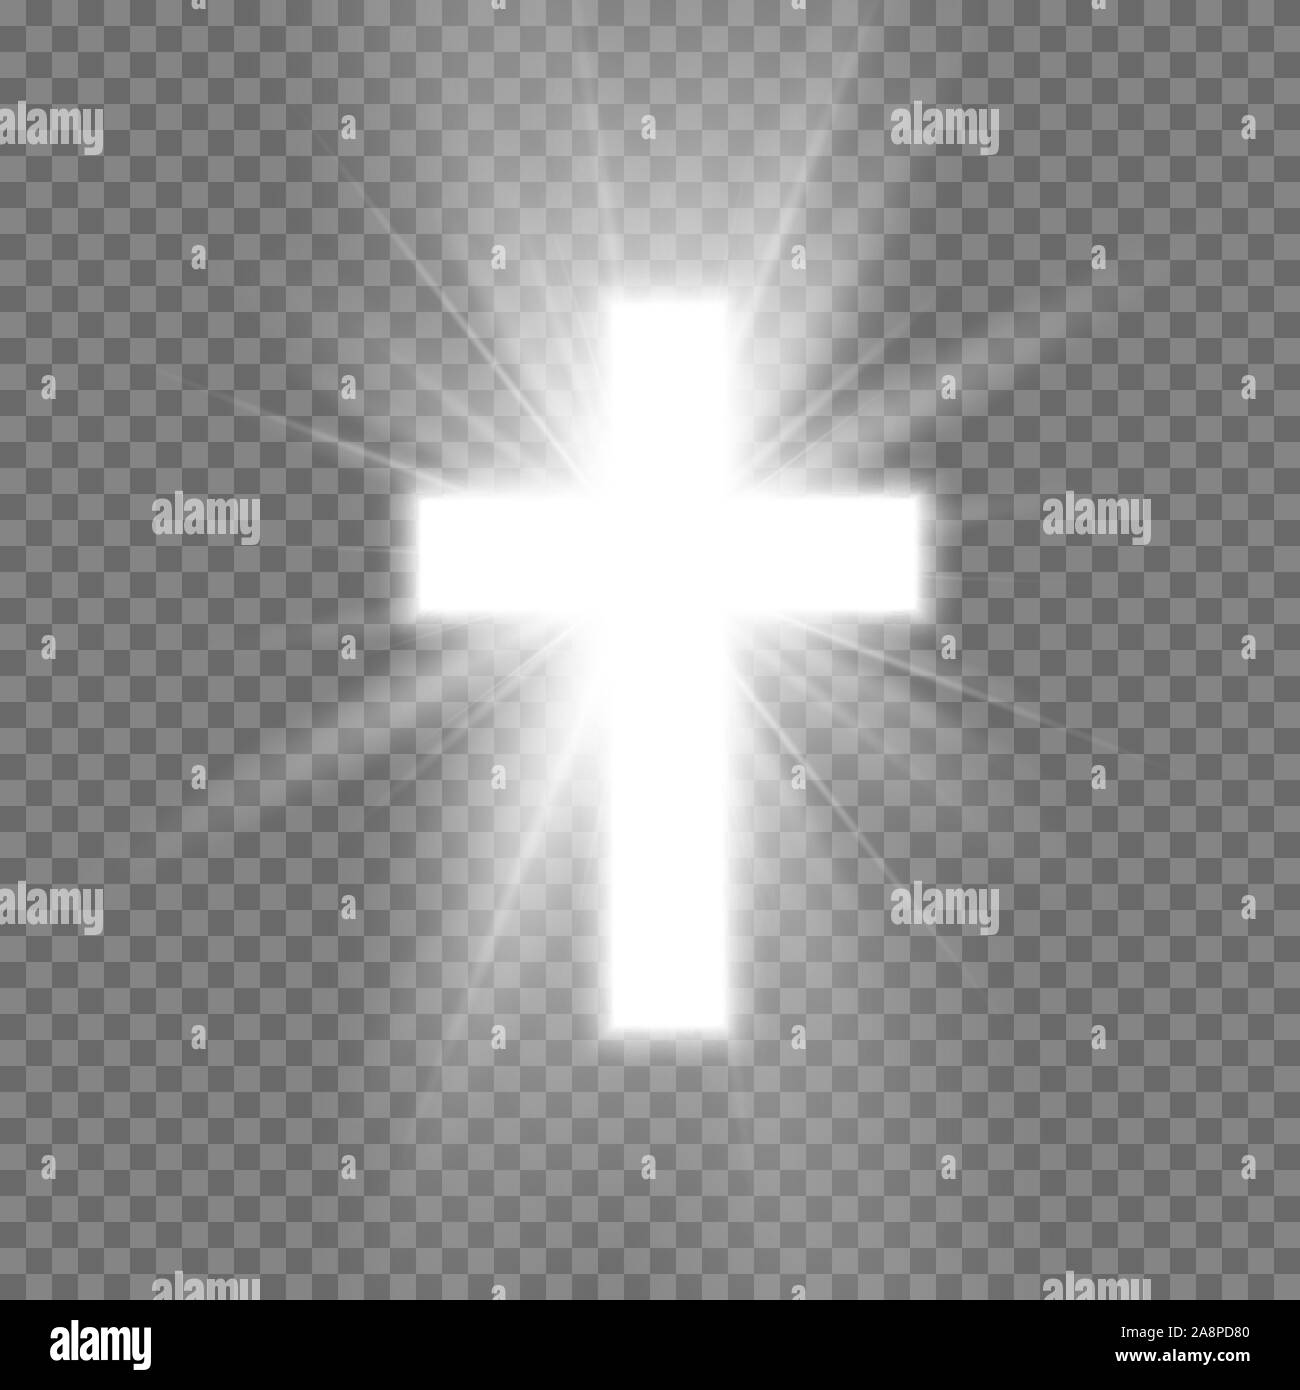 Croce bianca con candele simbolo del cristianesimo. Simbolo di speranza e di fede. Illustrazione di vettore isolato su sfondo trasparente Illustrazione Vettoriale